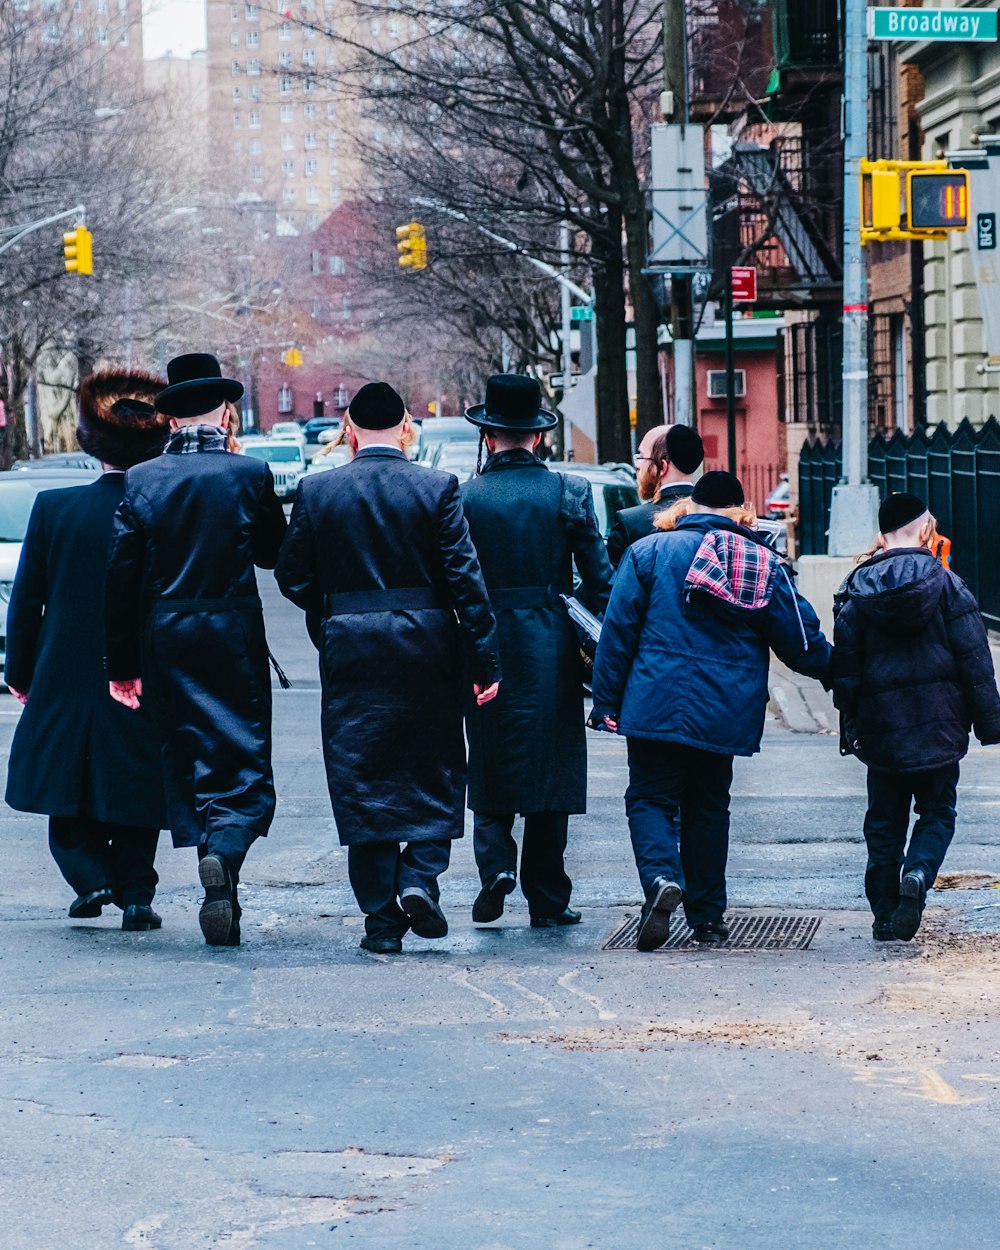 Grupo de homens de jaleco preto caminhando na calçada durante o dia